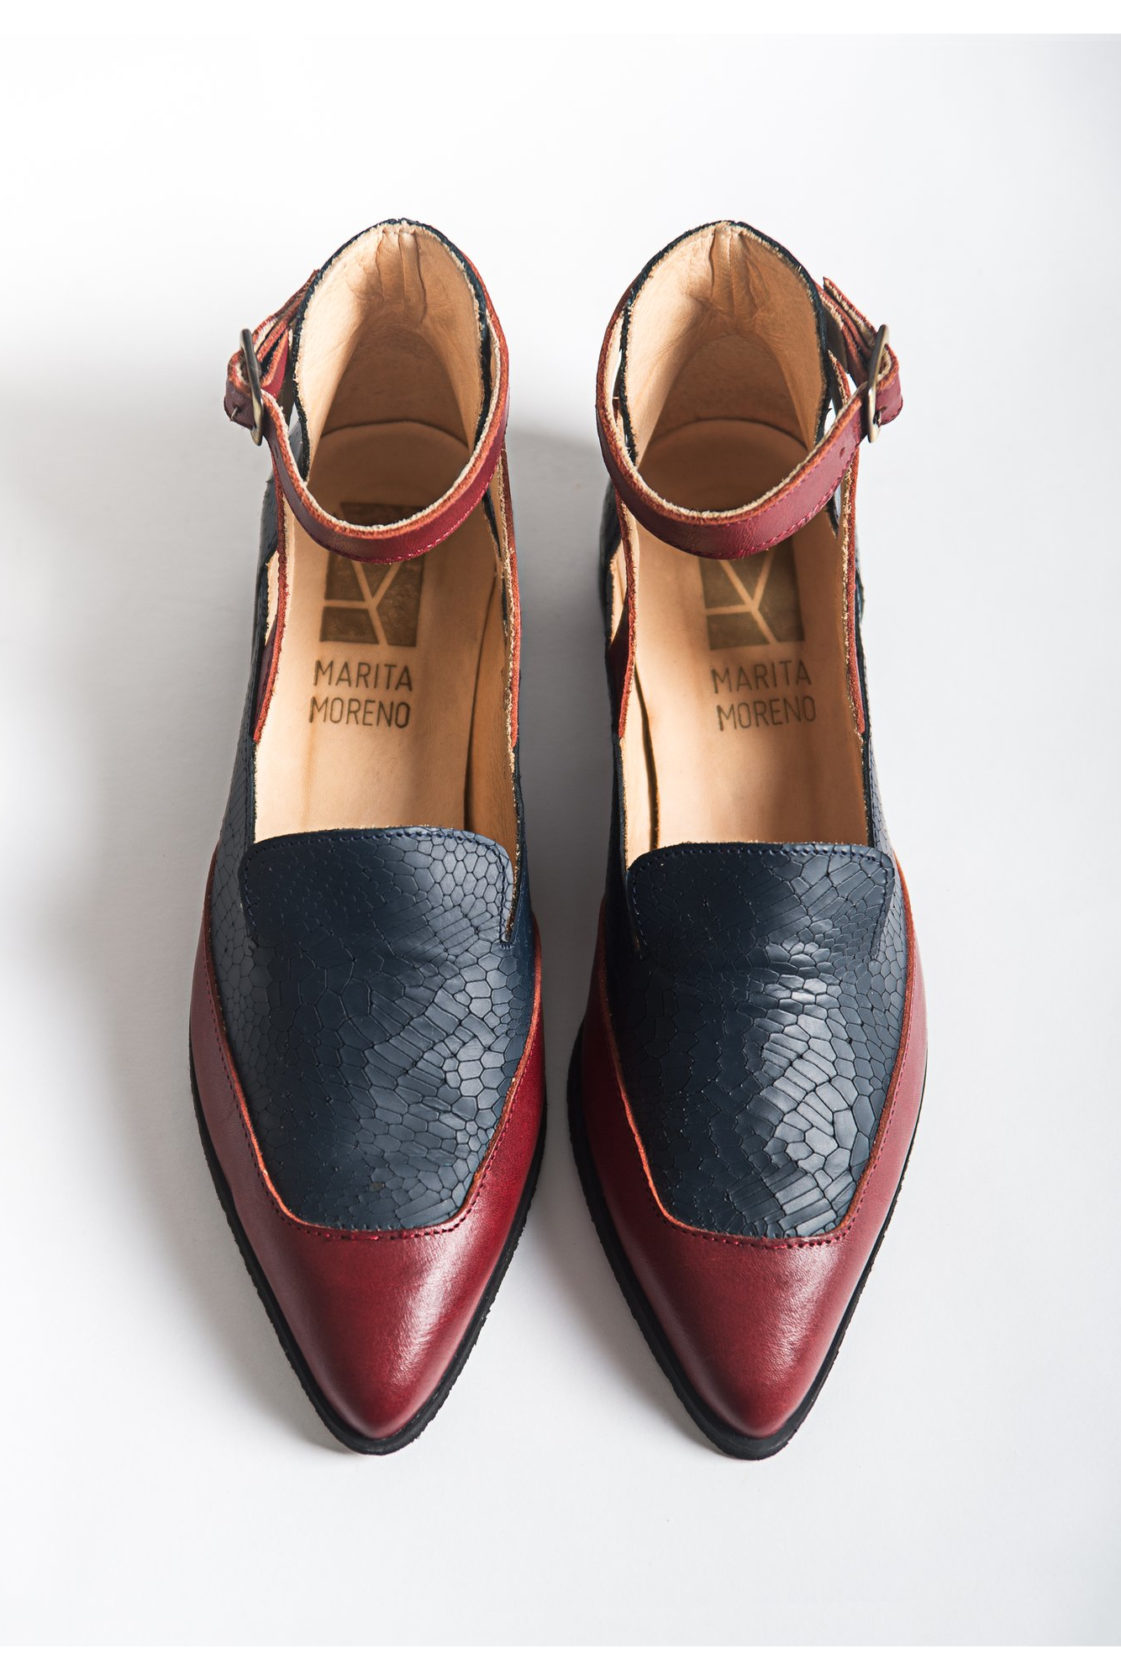 Marita Moreno | Schuhe Ermione red